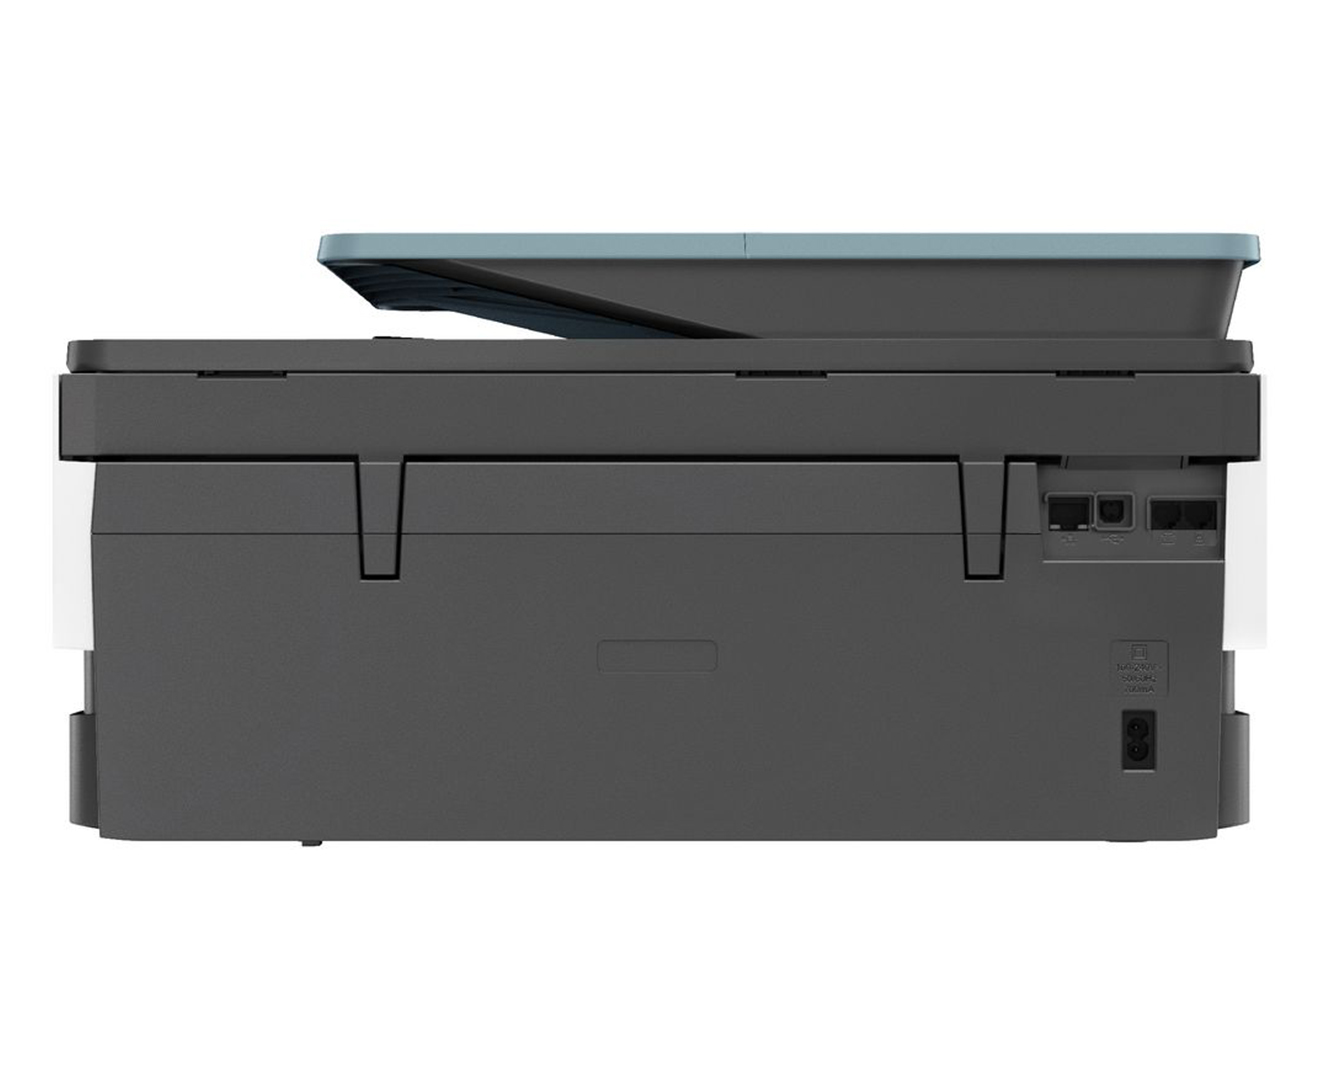 Hp Officejet Pro 8028 All In One Wireless Printer Nz 3918